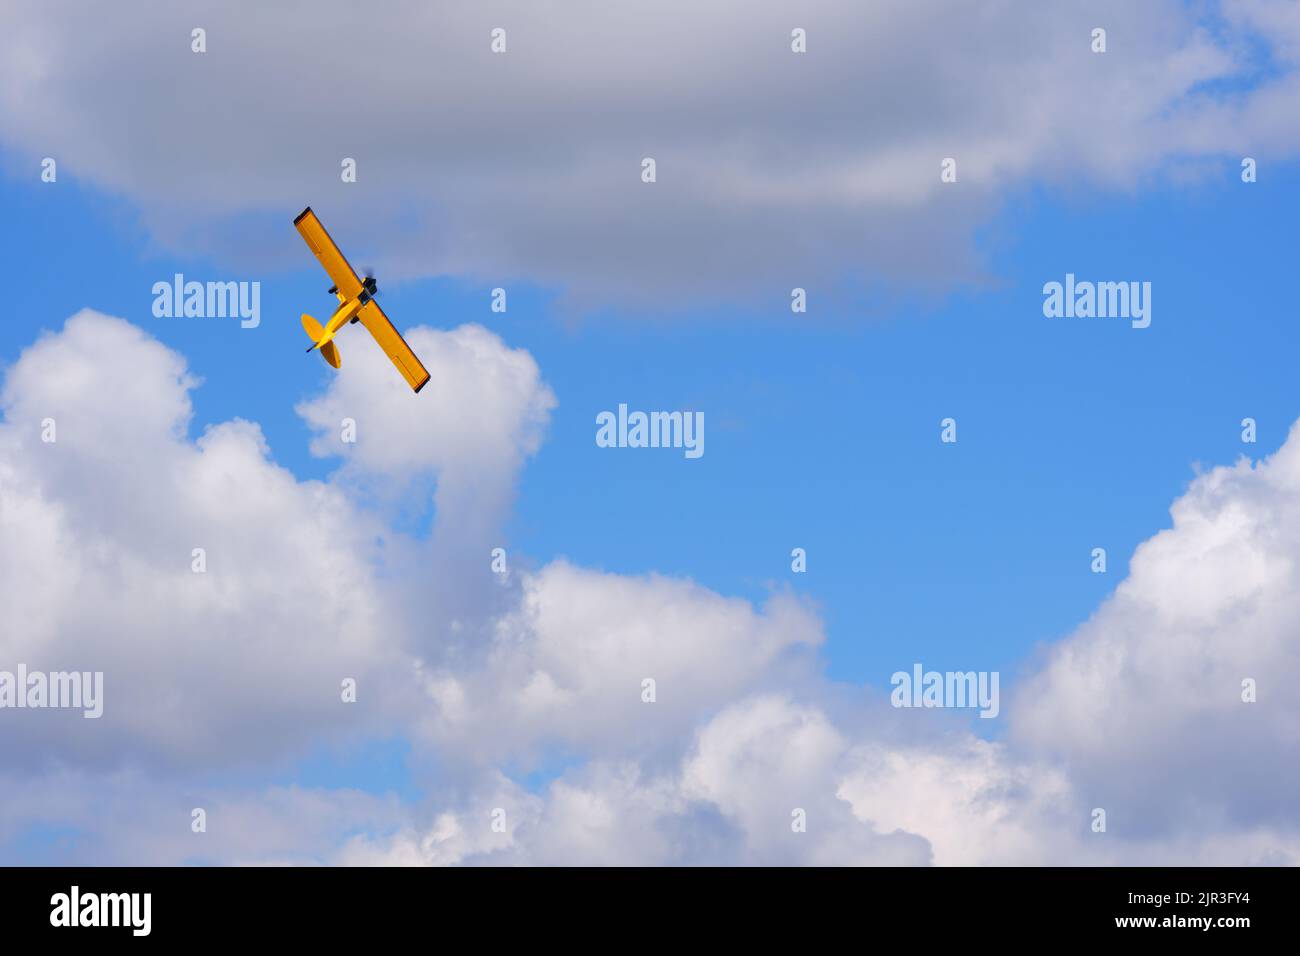 Avion d'hélice jaune à moteur unique volant dans un ciel bleu ciel nuageux par jour d'été Banque D'Images